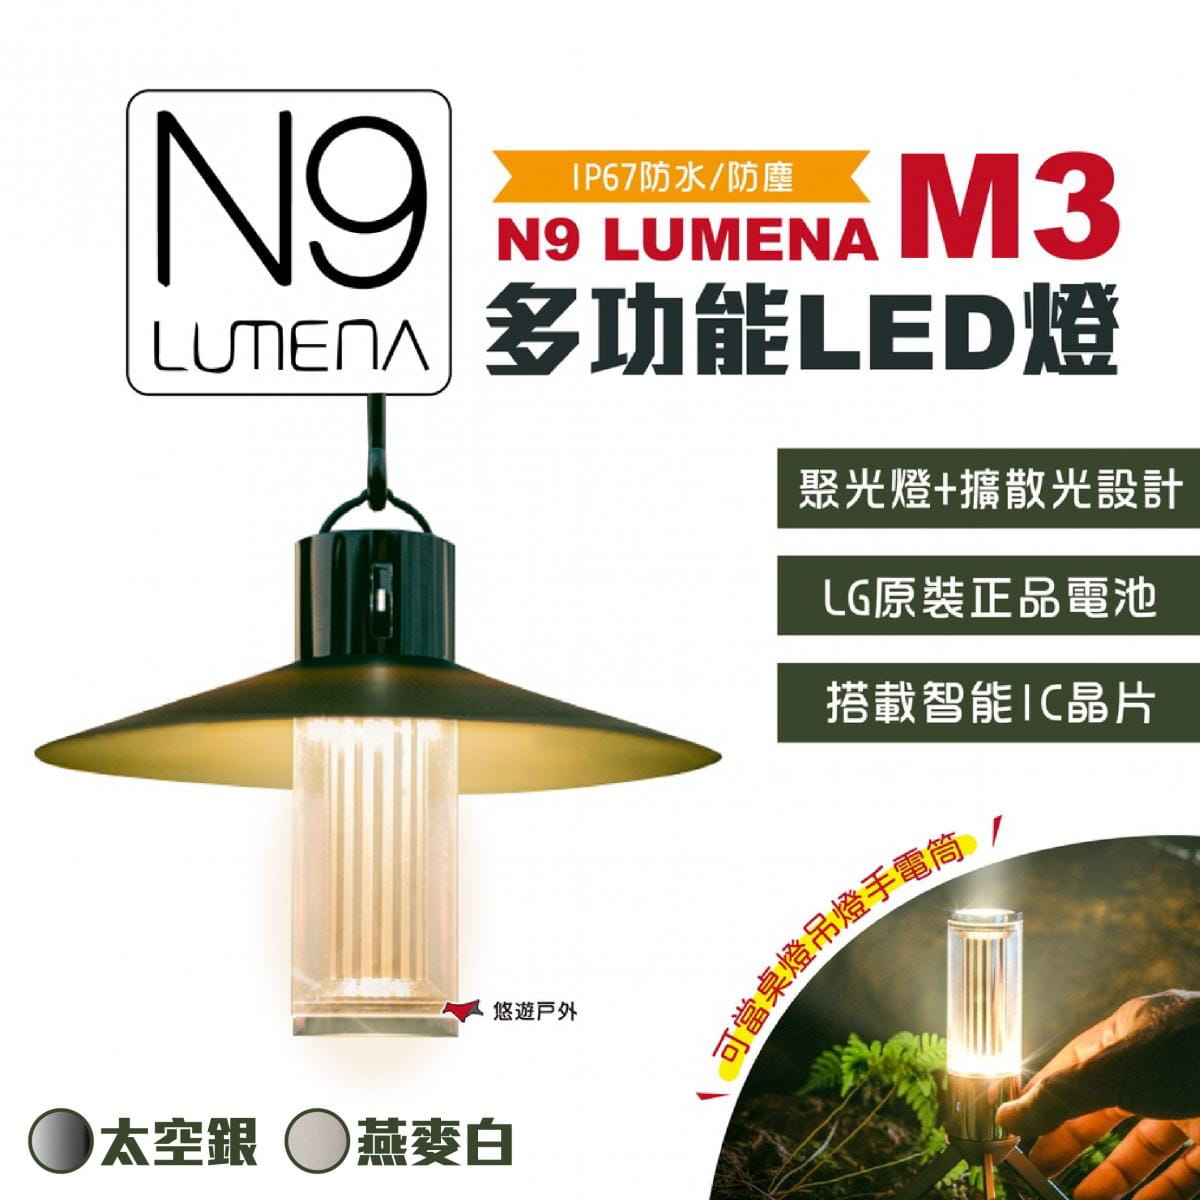 【N9 LUMENA】 M3多功能LED燈 (悠遊戶外) 0